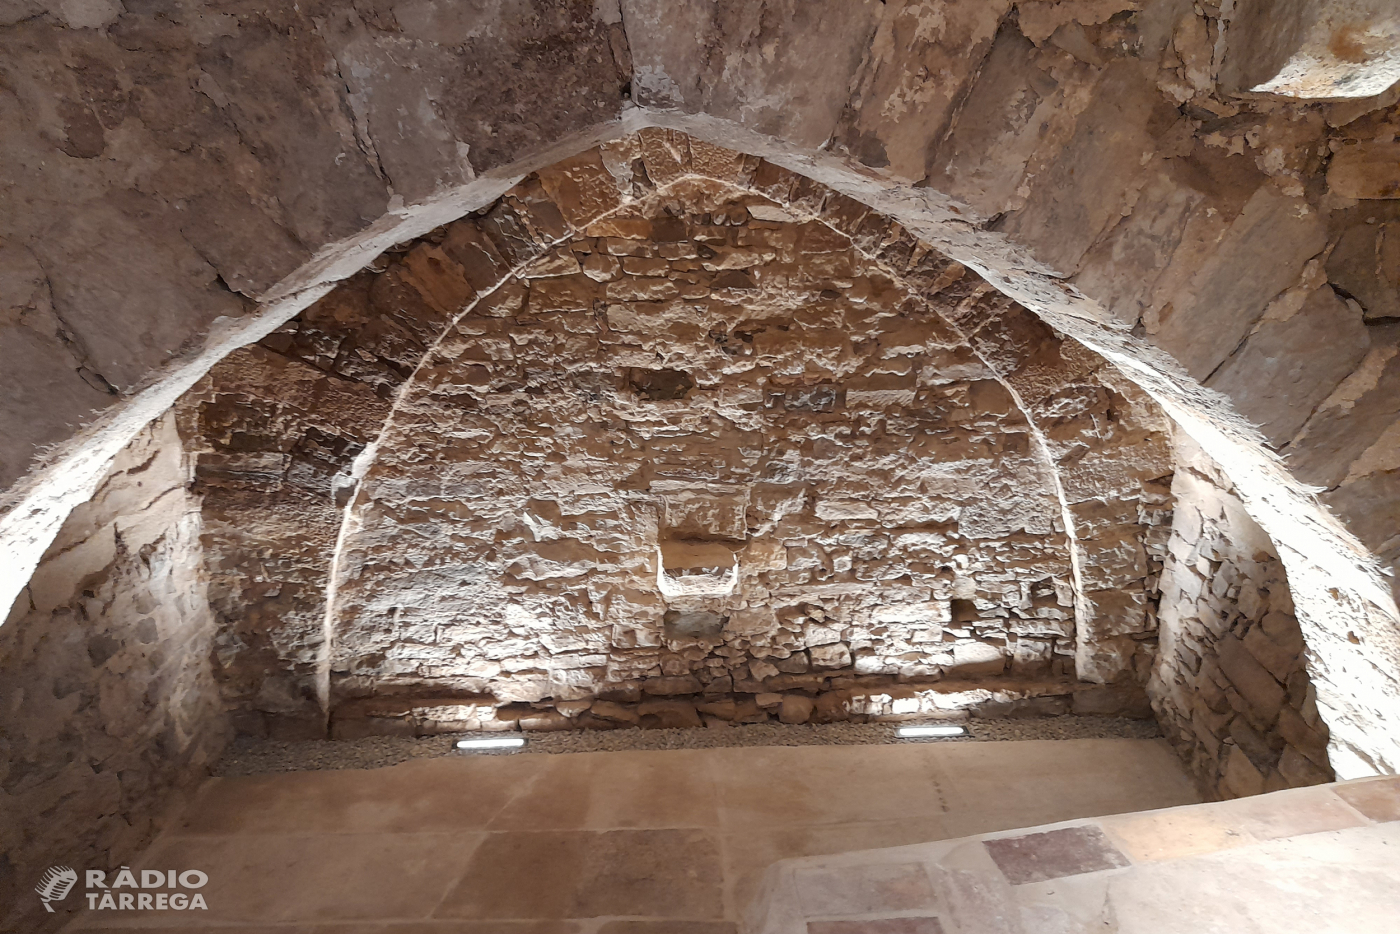 L’Ajuntament de Tàrrega inaugurarà el proper 3 de setembre la Casa d’Avraham Xalom, exponent museïtzat de la vida a l’antic call medieval